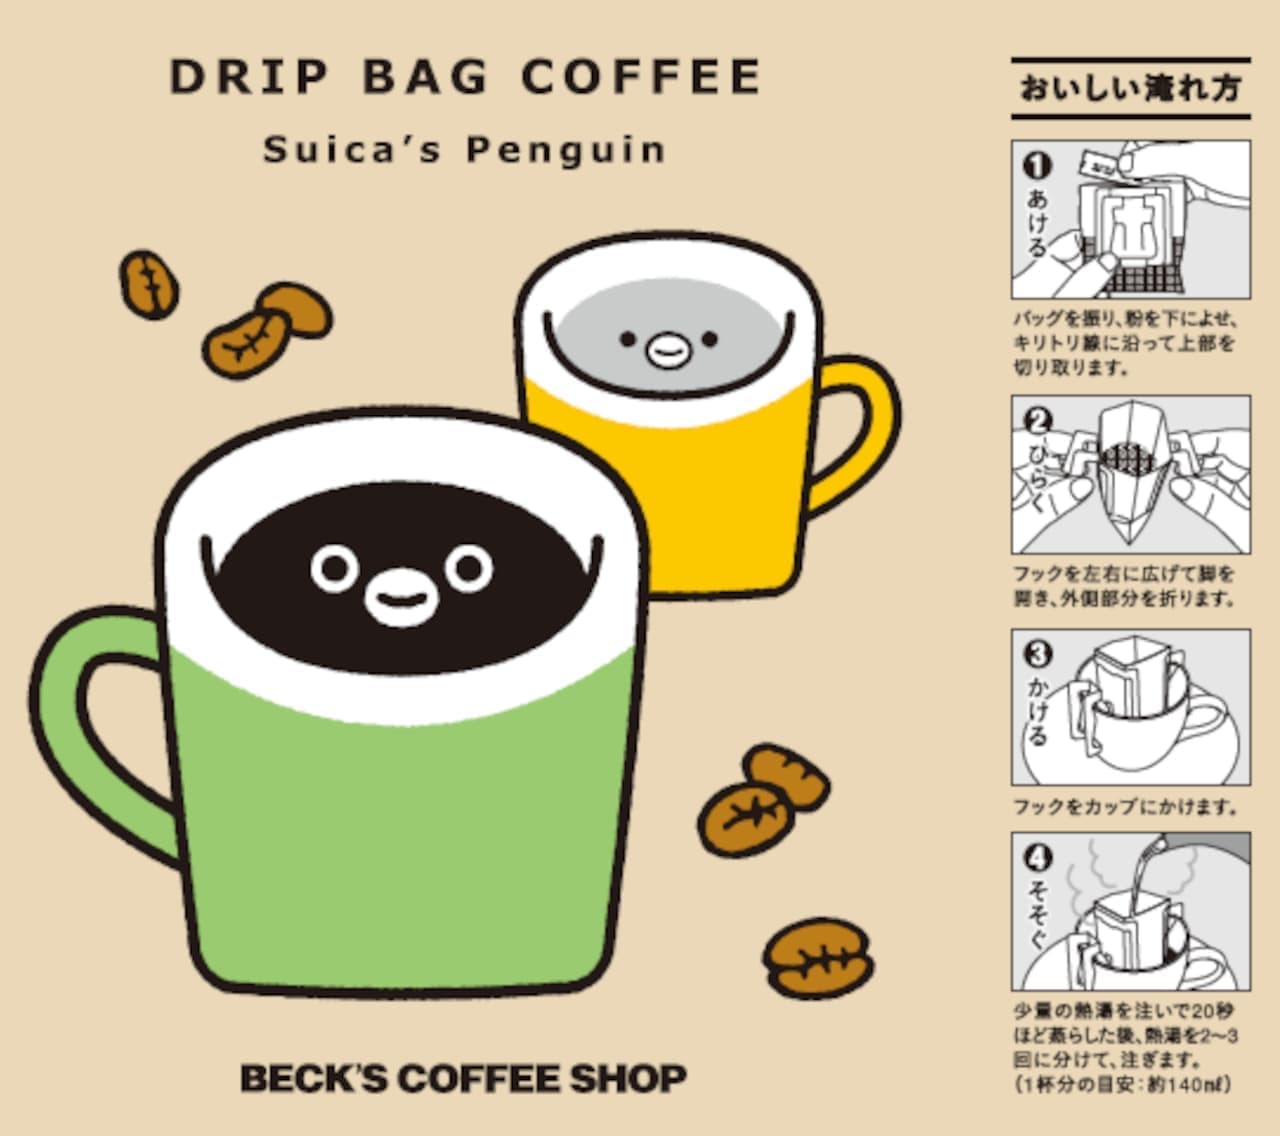 ベックスコーヒーショップ「Suicaのペンギンのドリップバッグコーヒー」